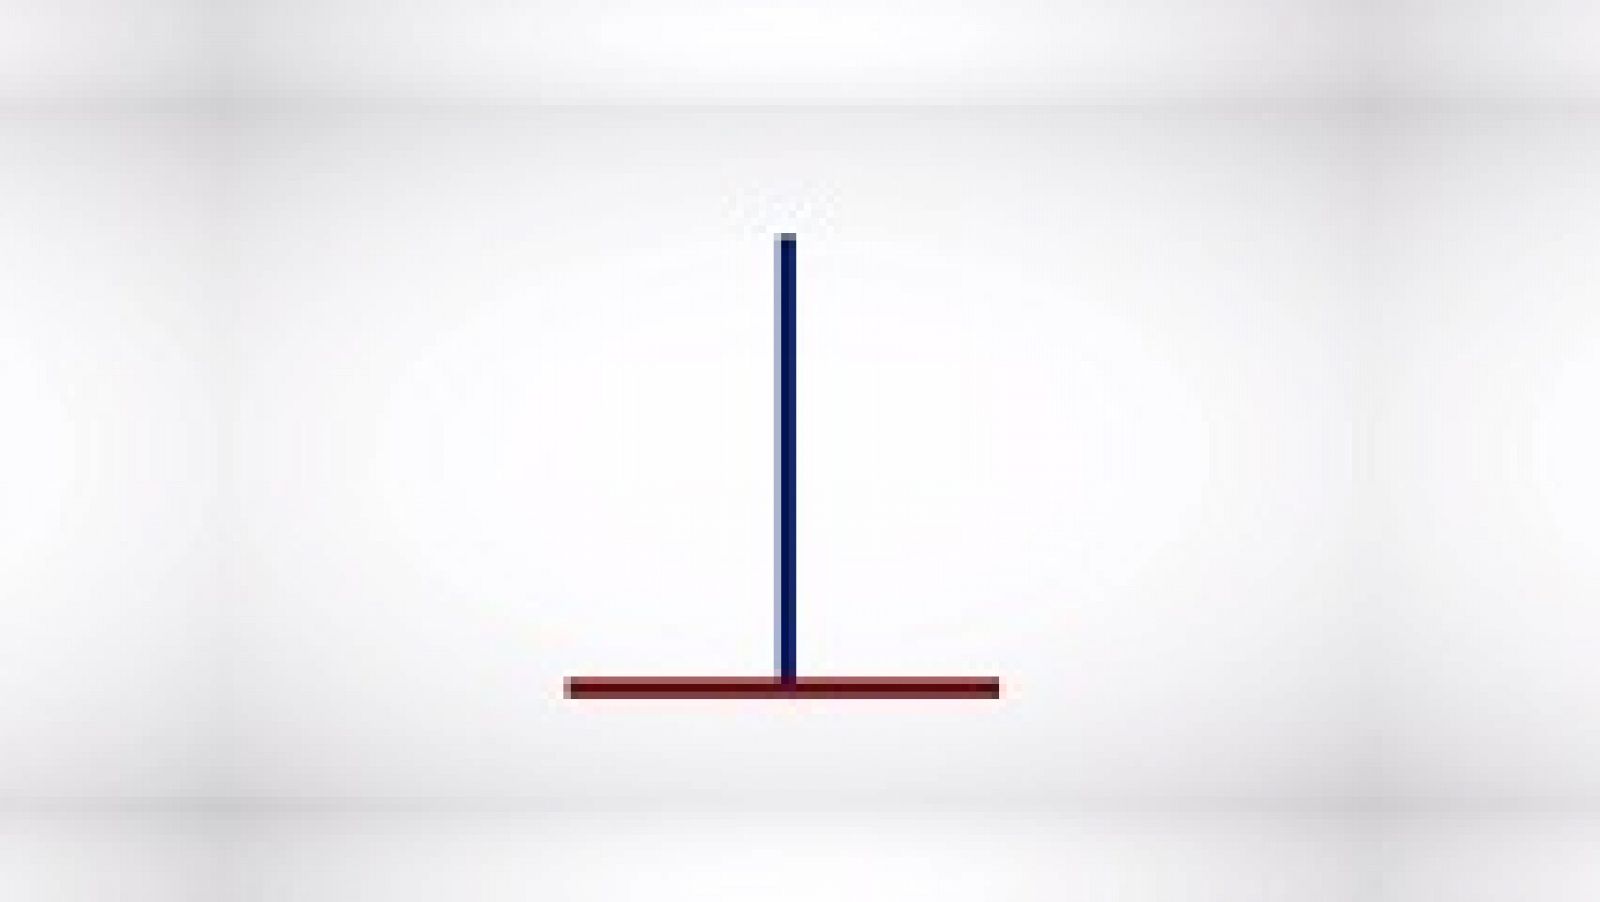 Desafía tu mente: ¿Qué línea es más larga: la azul o la roja? | RTVE Play